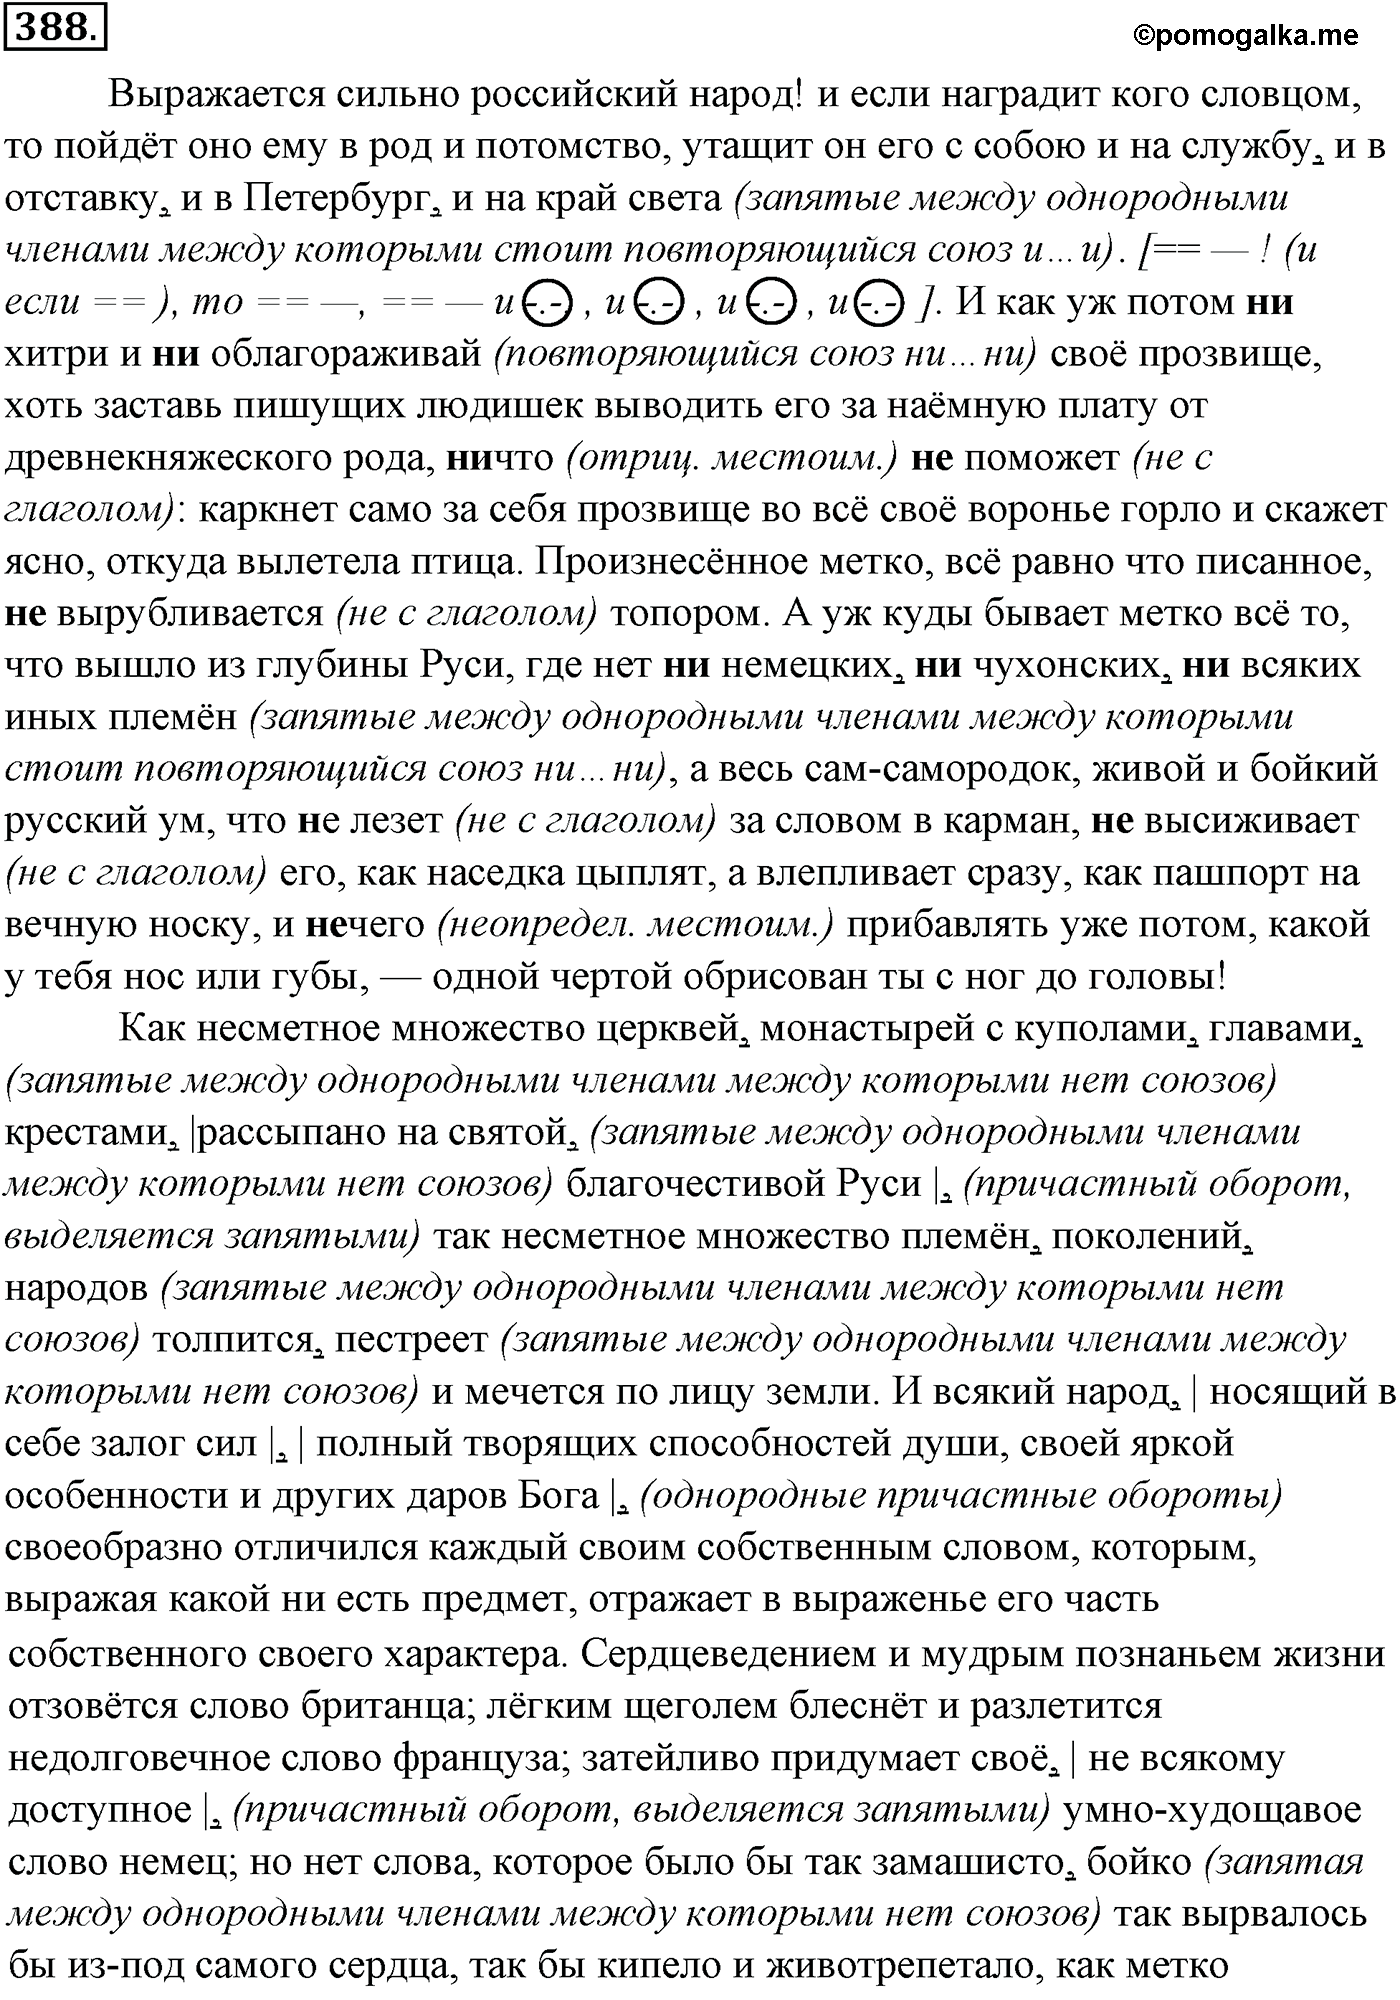 упражнение №388 русский язык 10-11 класс Гольцова